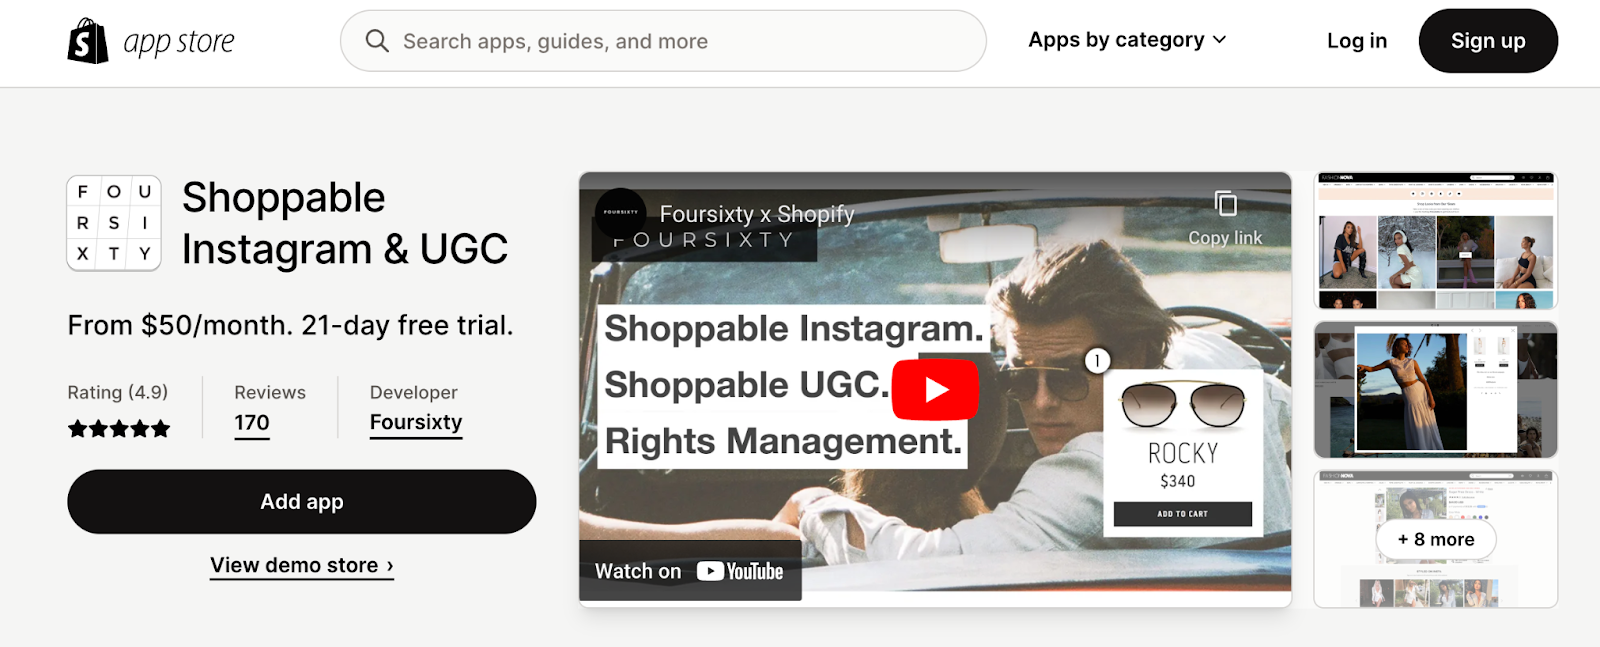 best shopify apps for instagram - Shoppable Instagram